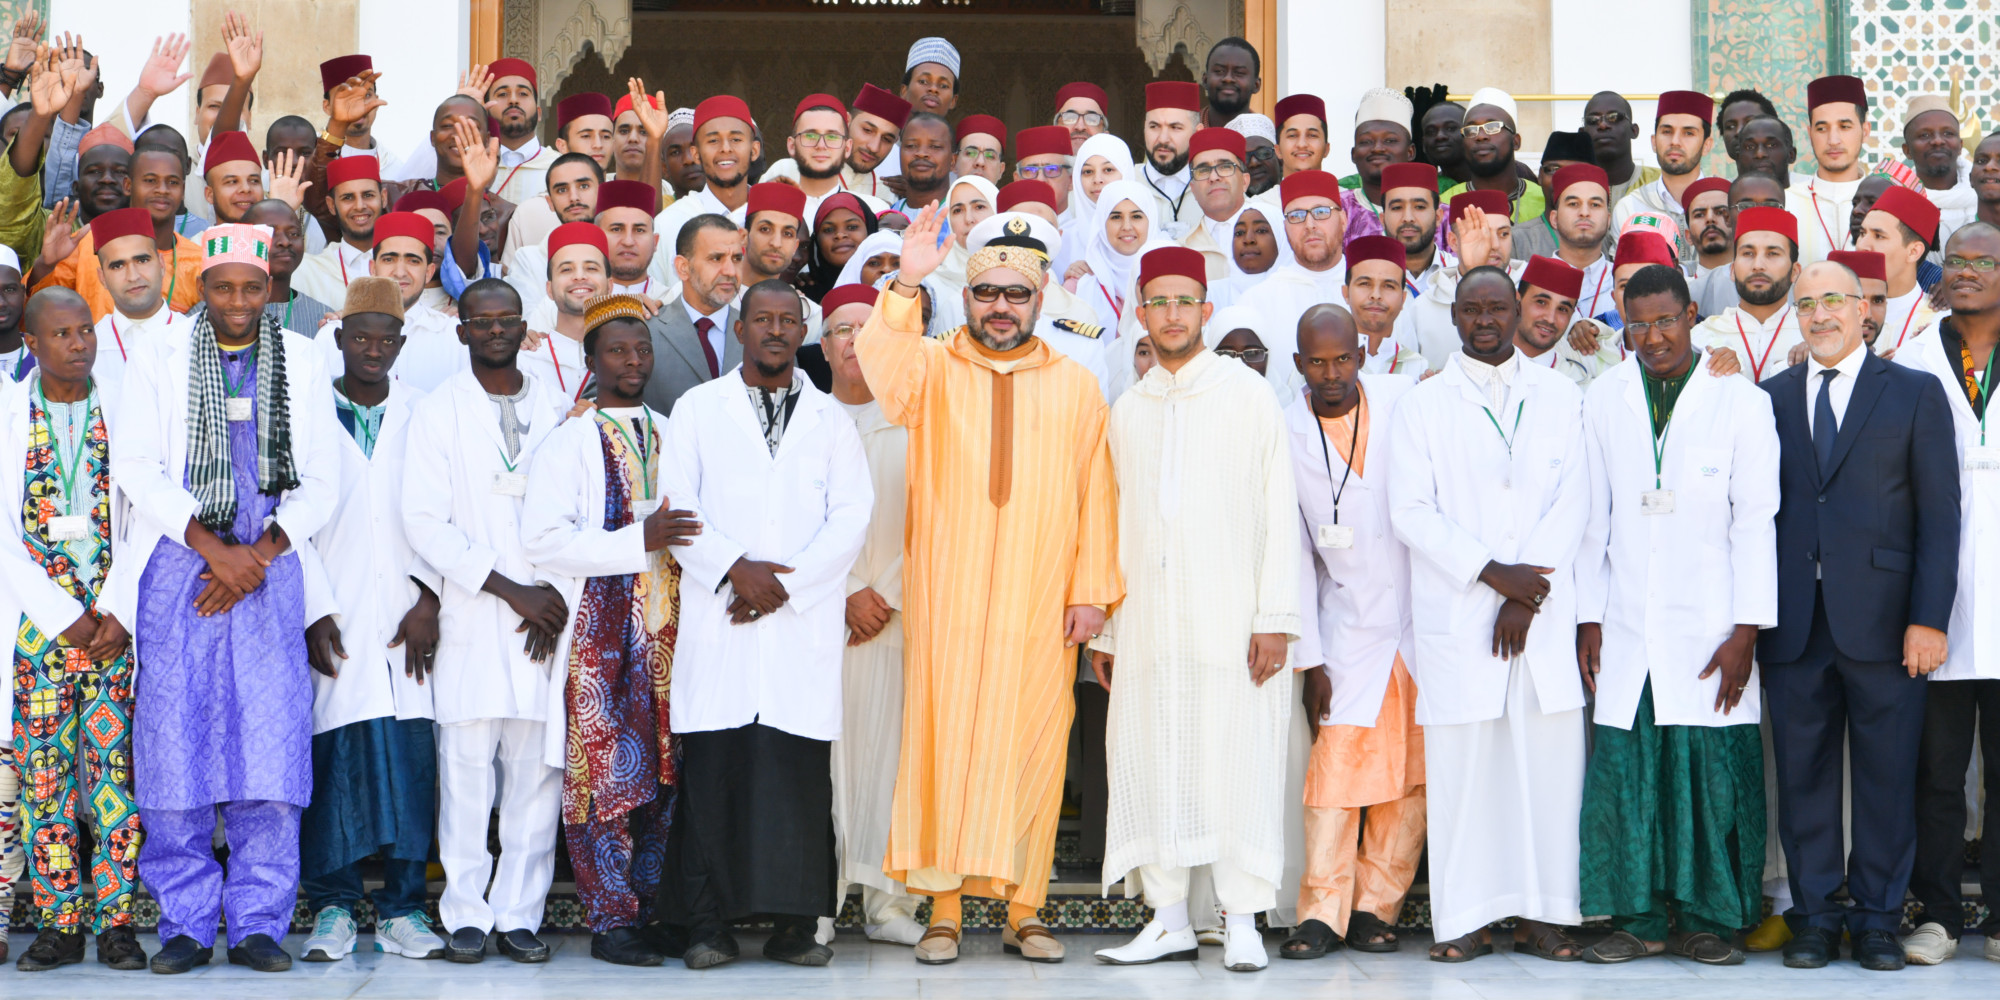 2798 طالبا منحدرا من بلدان إفريقية يستفيدون من التكوين بمعهد محمد السادس لتكوين الأئمة